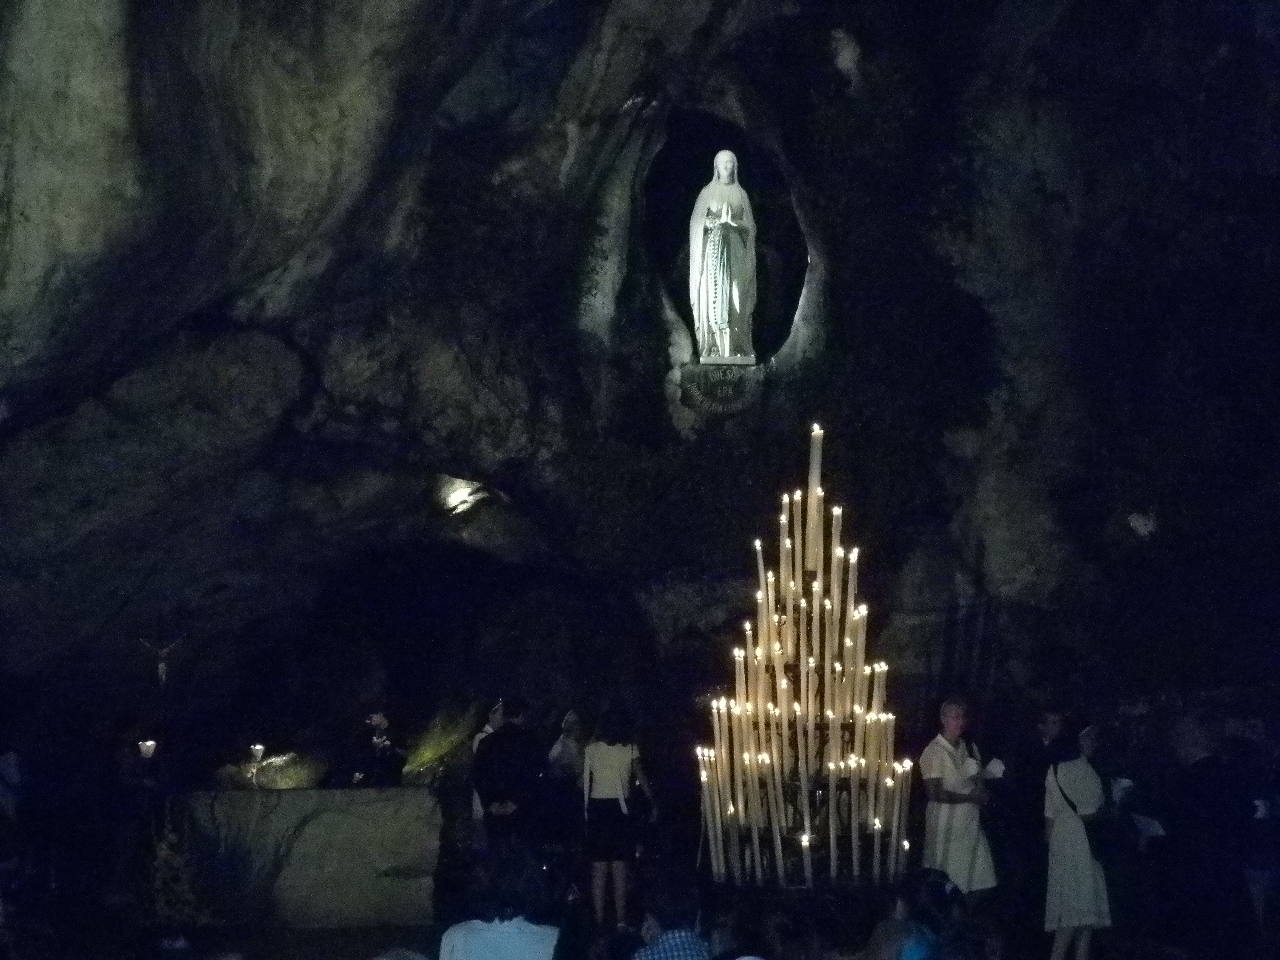 Après la procession, beaucoup prient dans la nuit devant le grotte. "Sainte Marie, Mère de Dieu, priez pour nous".